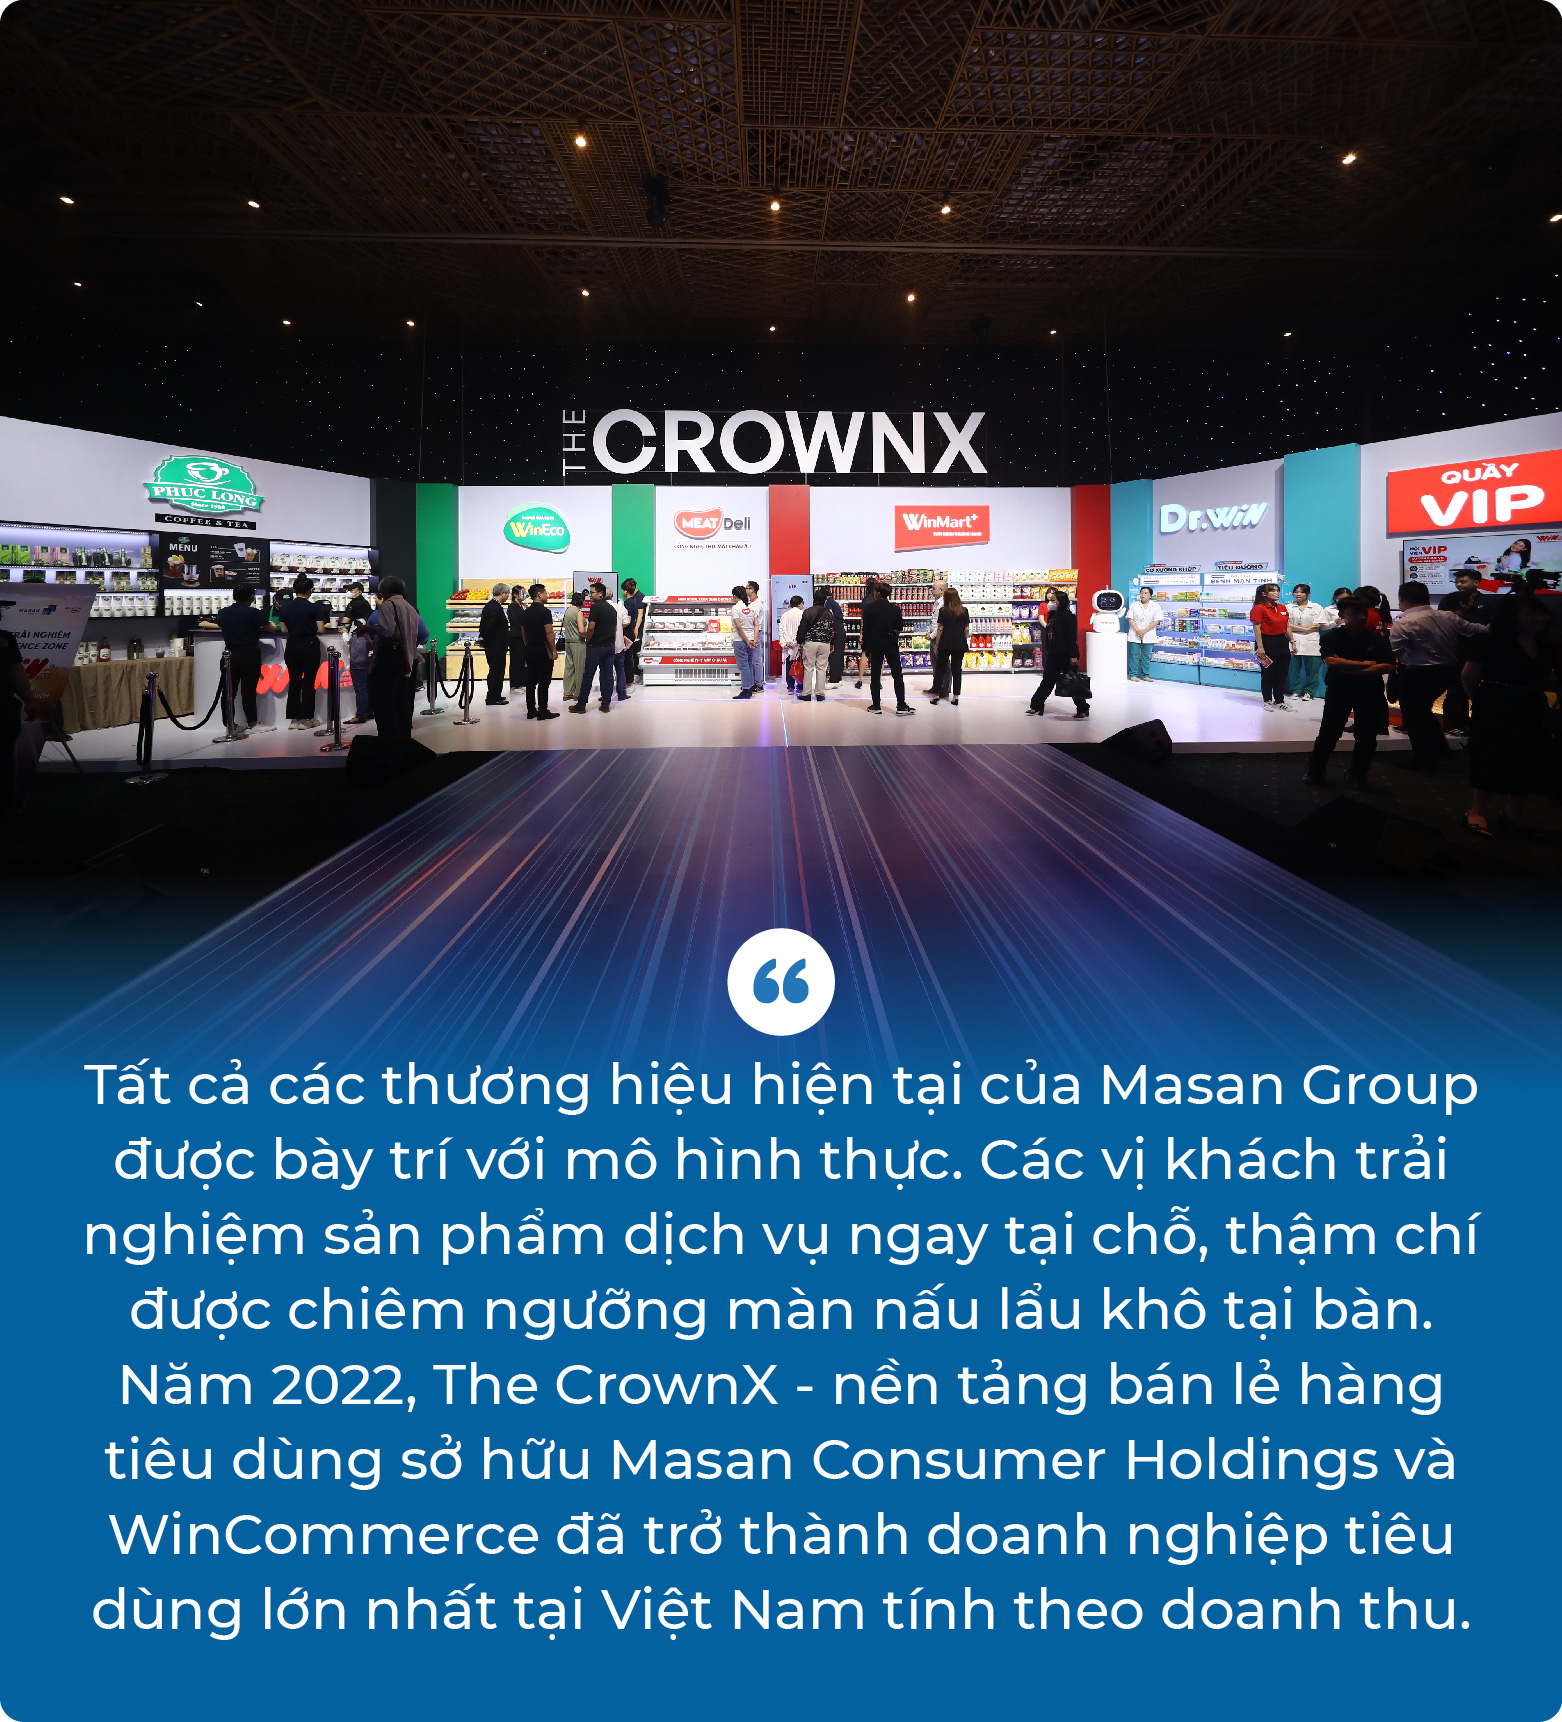 Vì sao Masan Group là đơn vị top đầu về sự đầu tư cho Đại hội cổ đông thường niên? - Ảnh 2.